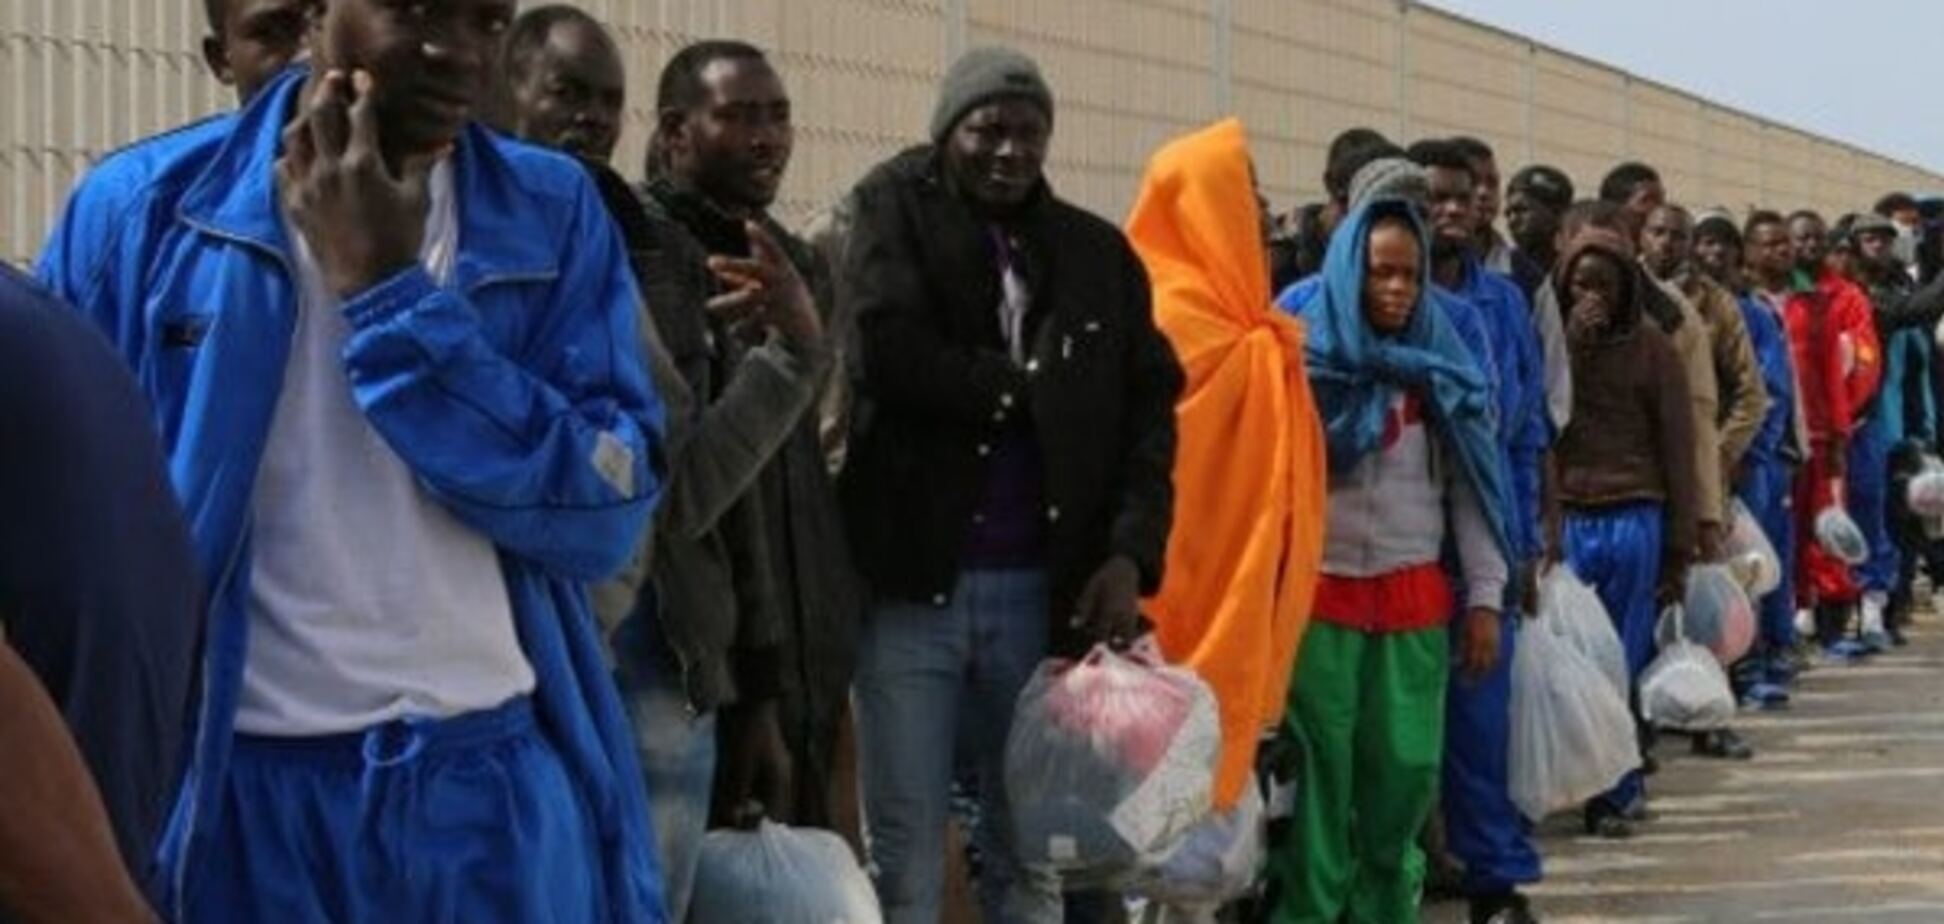 К границам Евросоюза впервые прибыло более 100 тыс. мигрантов